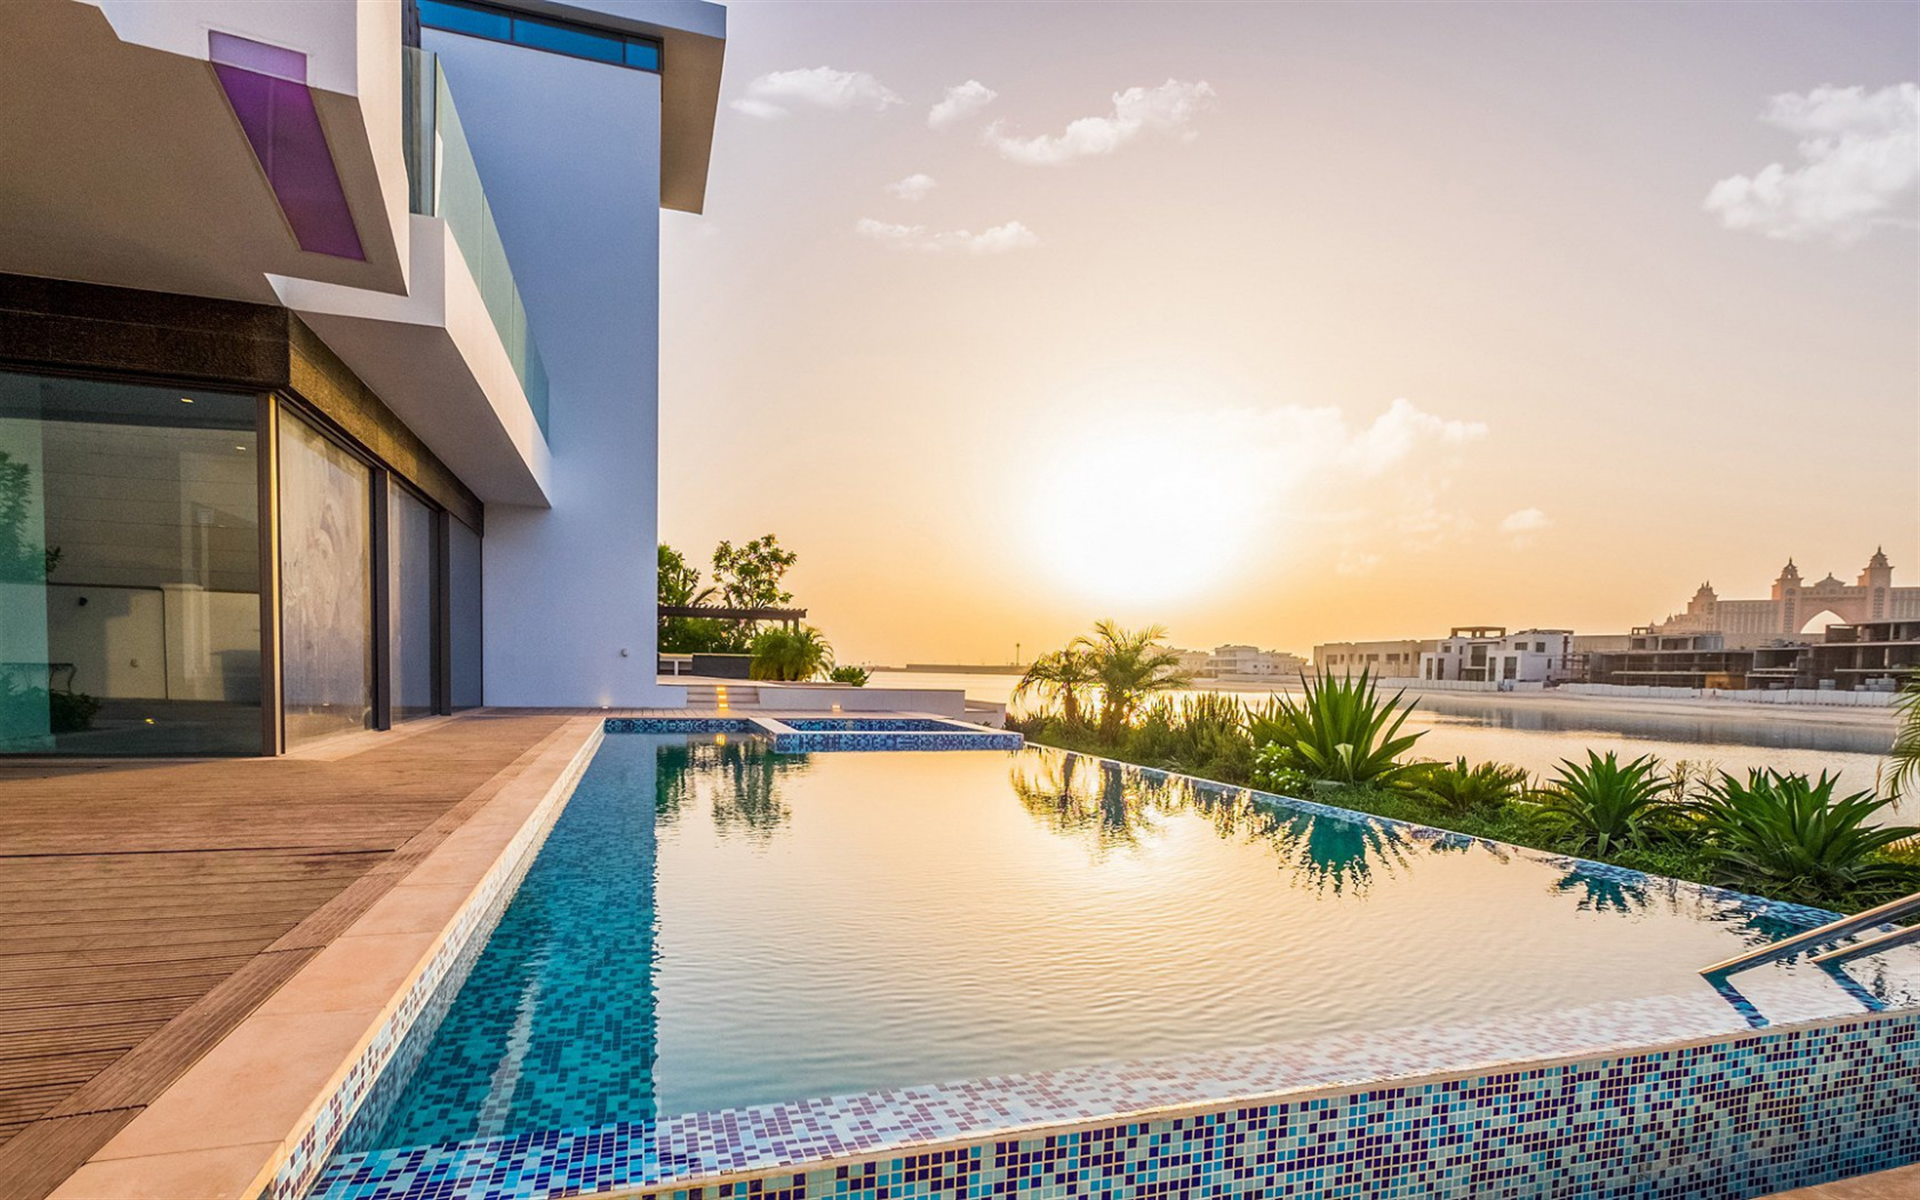 Pool Near The House, Pool Design, Luxury House, Dubai, - Villa Dubai Palm Jumeirah - HD Wallpaper 